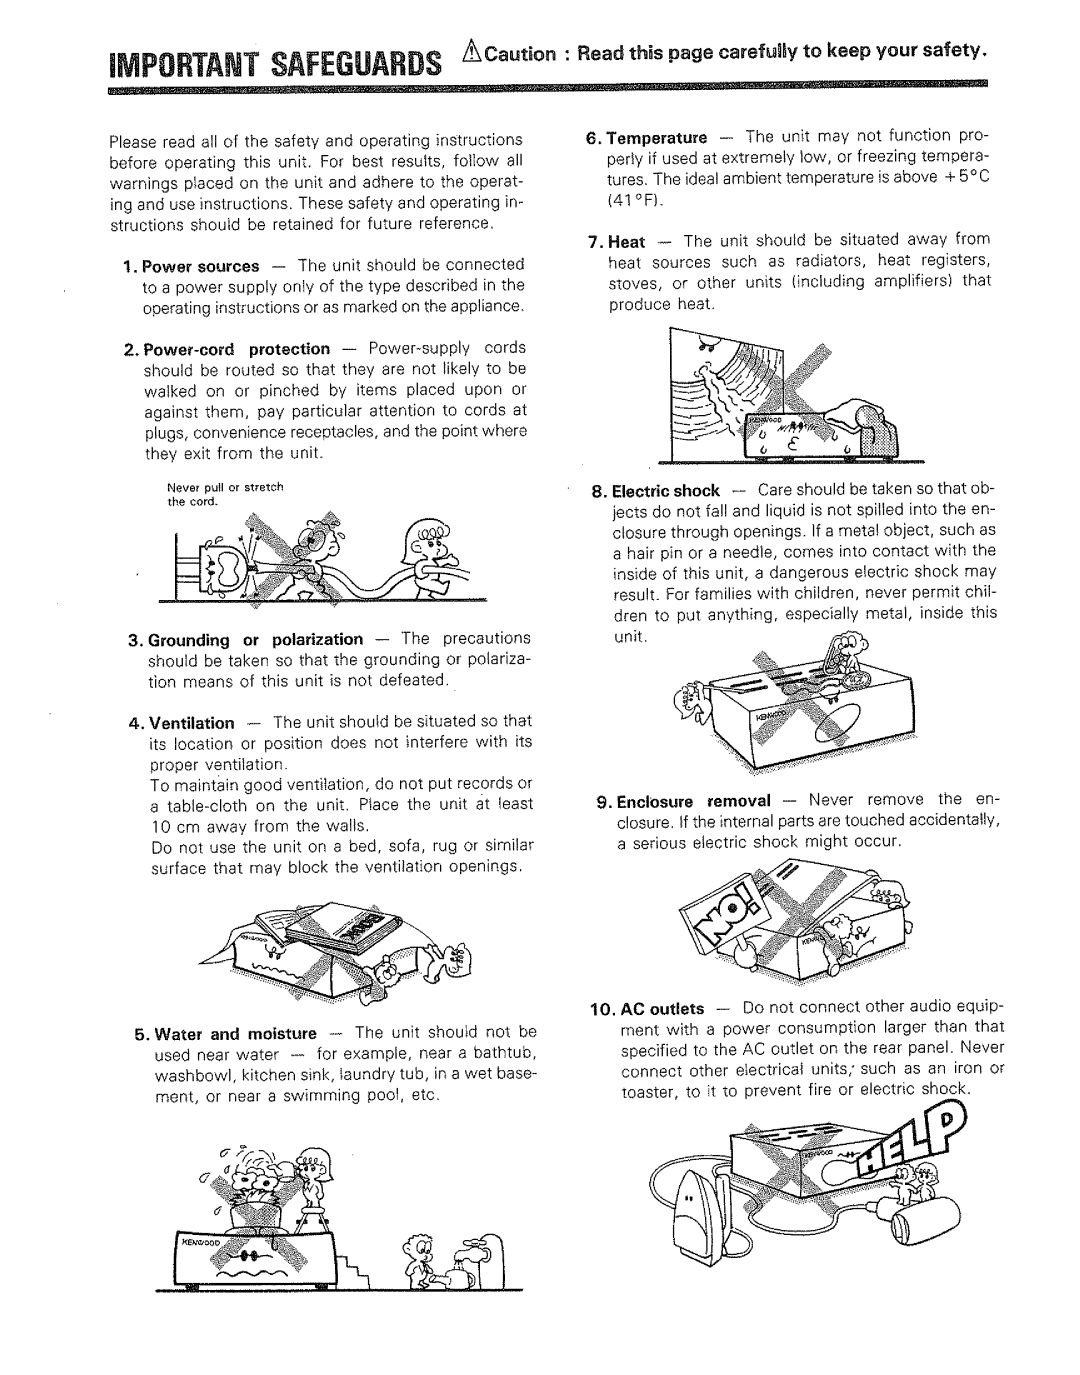 Kenwood DP-M4010 manual 